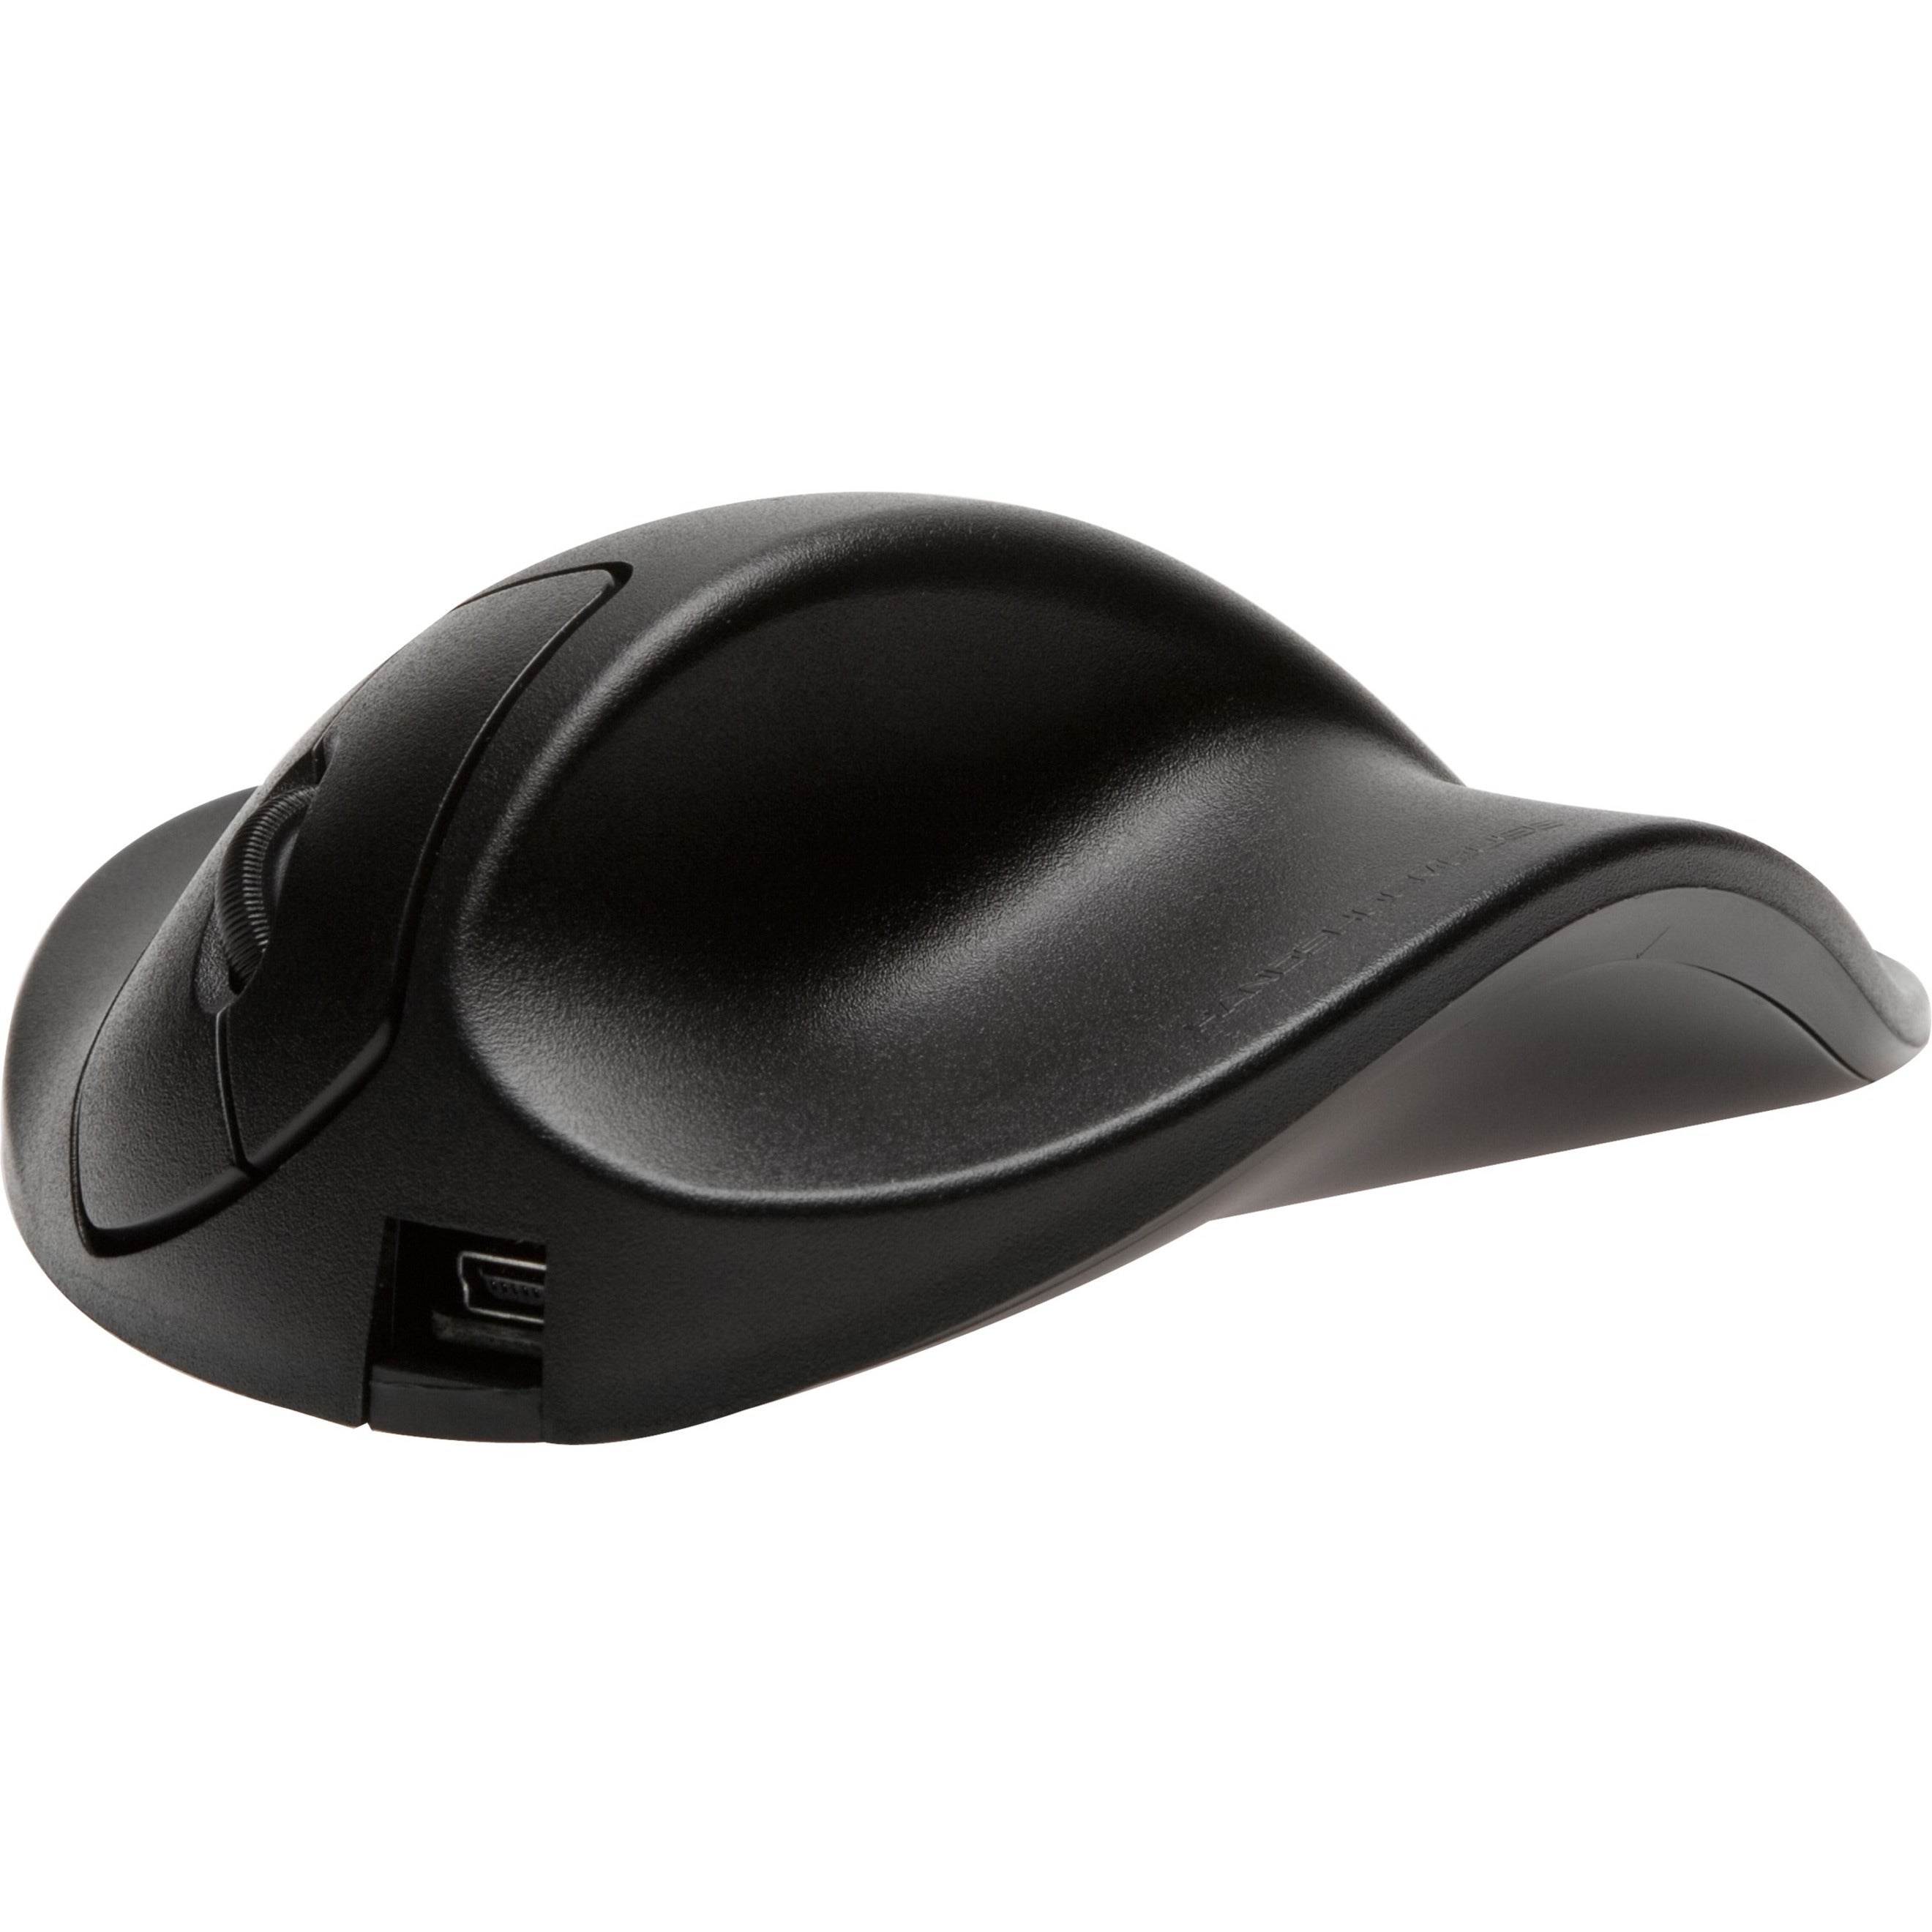 HandShoeMouse L2WB-LC Mouse Adattamento Ergonomico Rotella Ottica USB 2.0